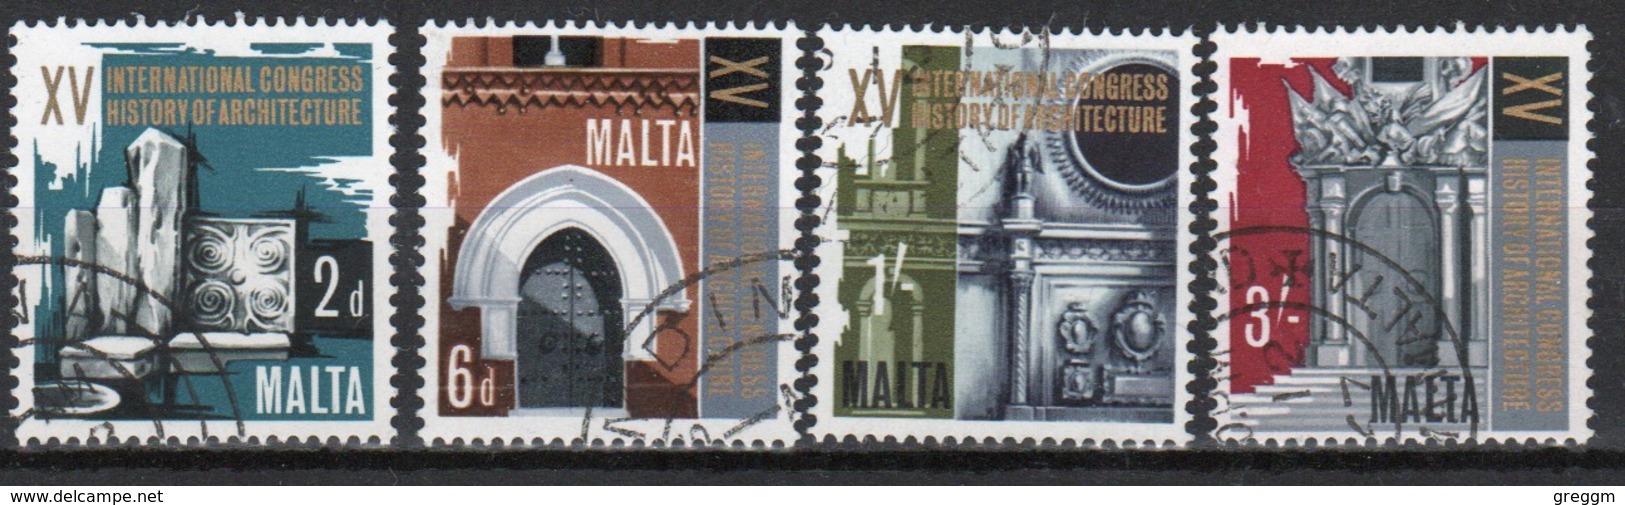 Malta Complete Set Of Stamps To Celebrate 15th Architectural Congress 1967. - Malta